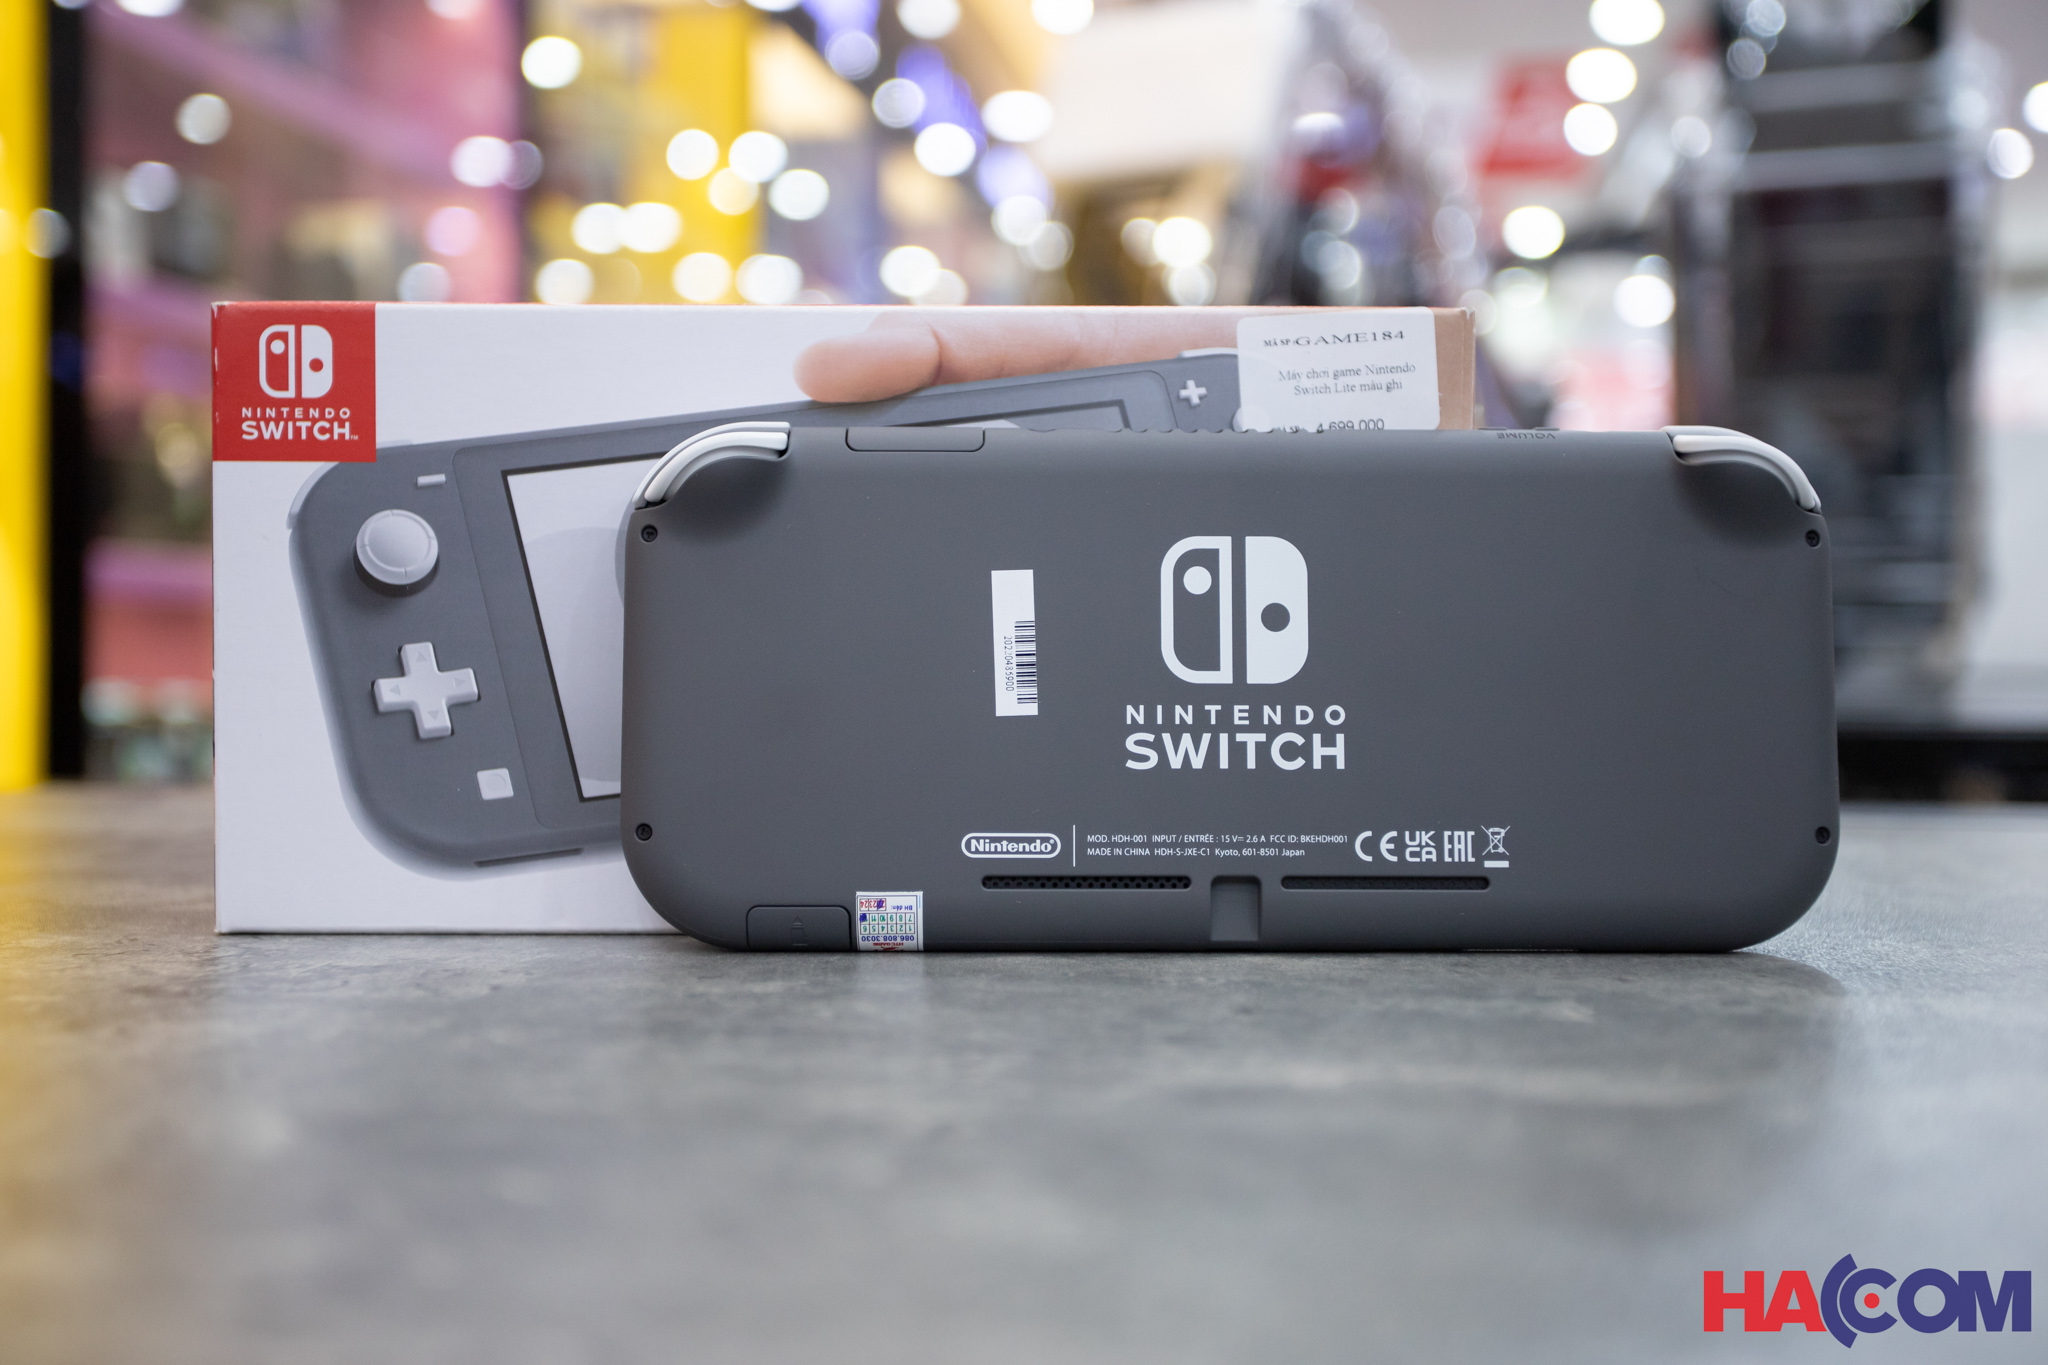 Máy chơi game Nintendo Switch Lite - Gray - Màu ghi